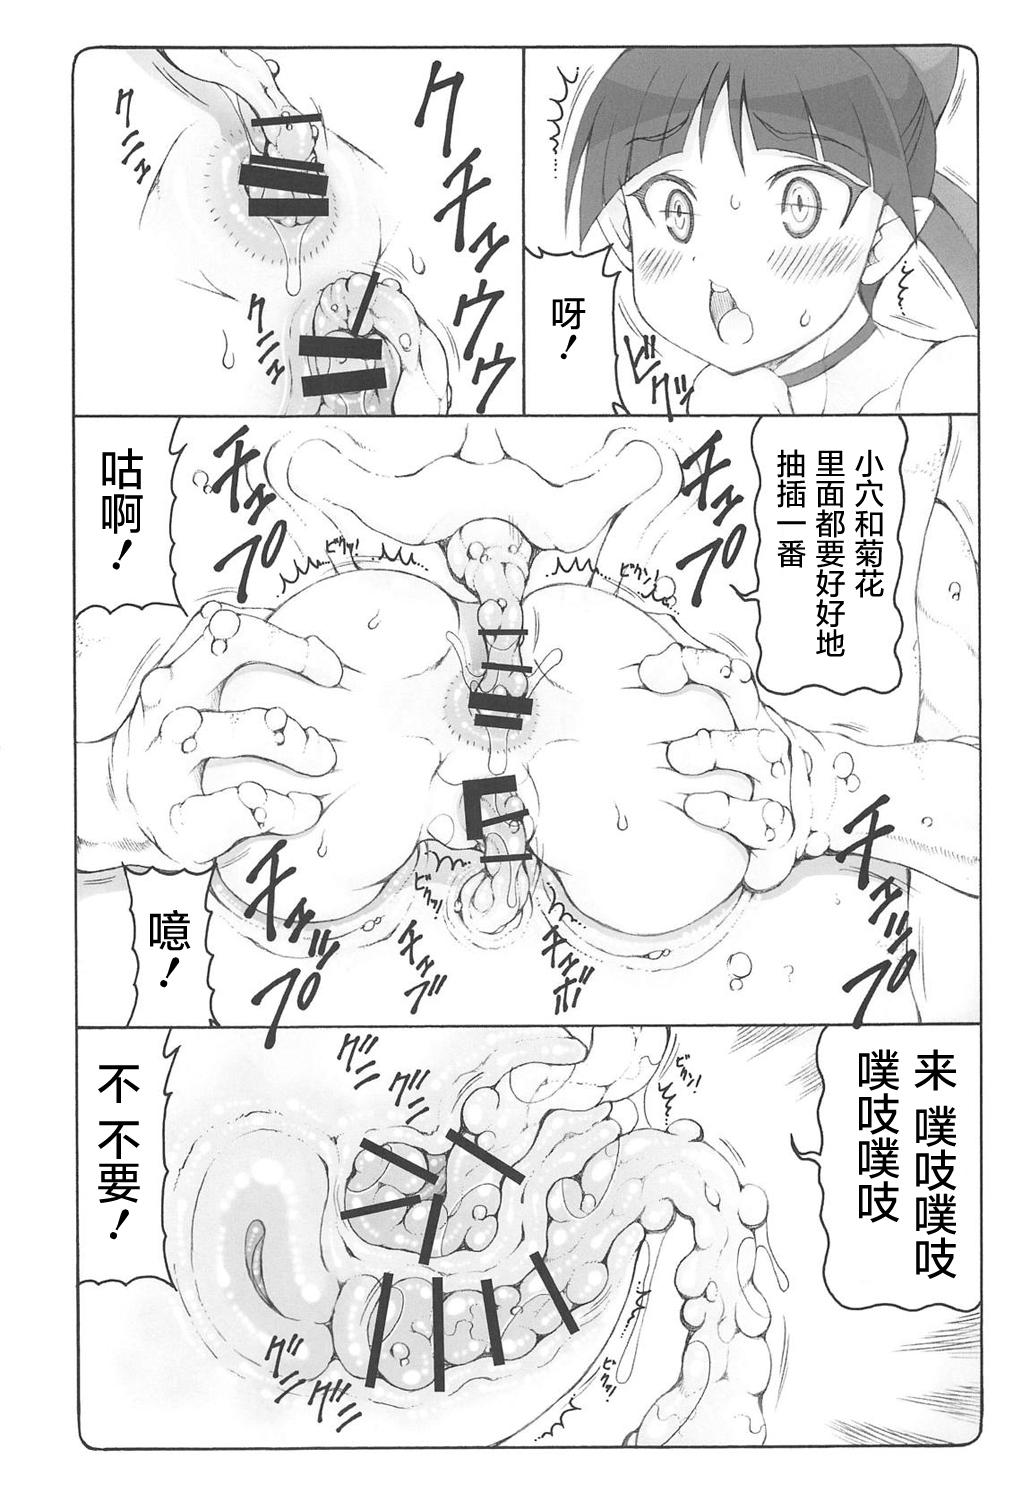 Off Nuko Musume vs Youkai Shirikabe - Gegege no kitarou Com - Page 12